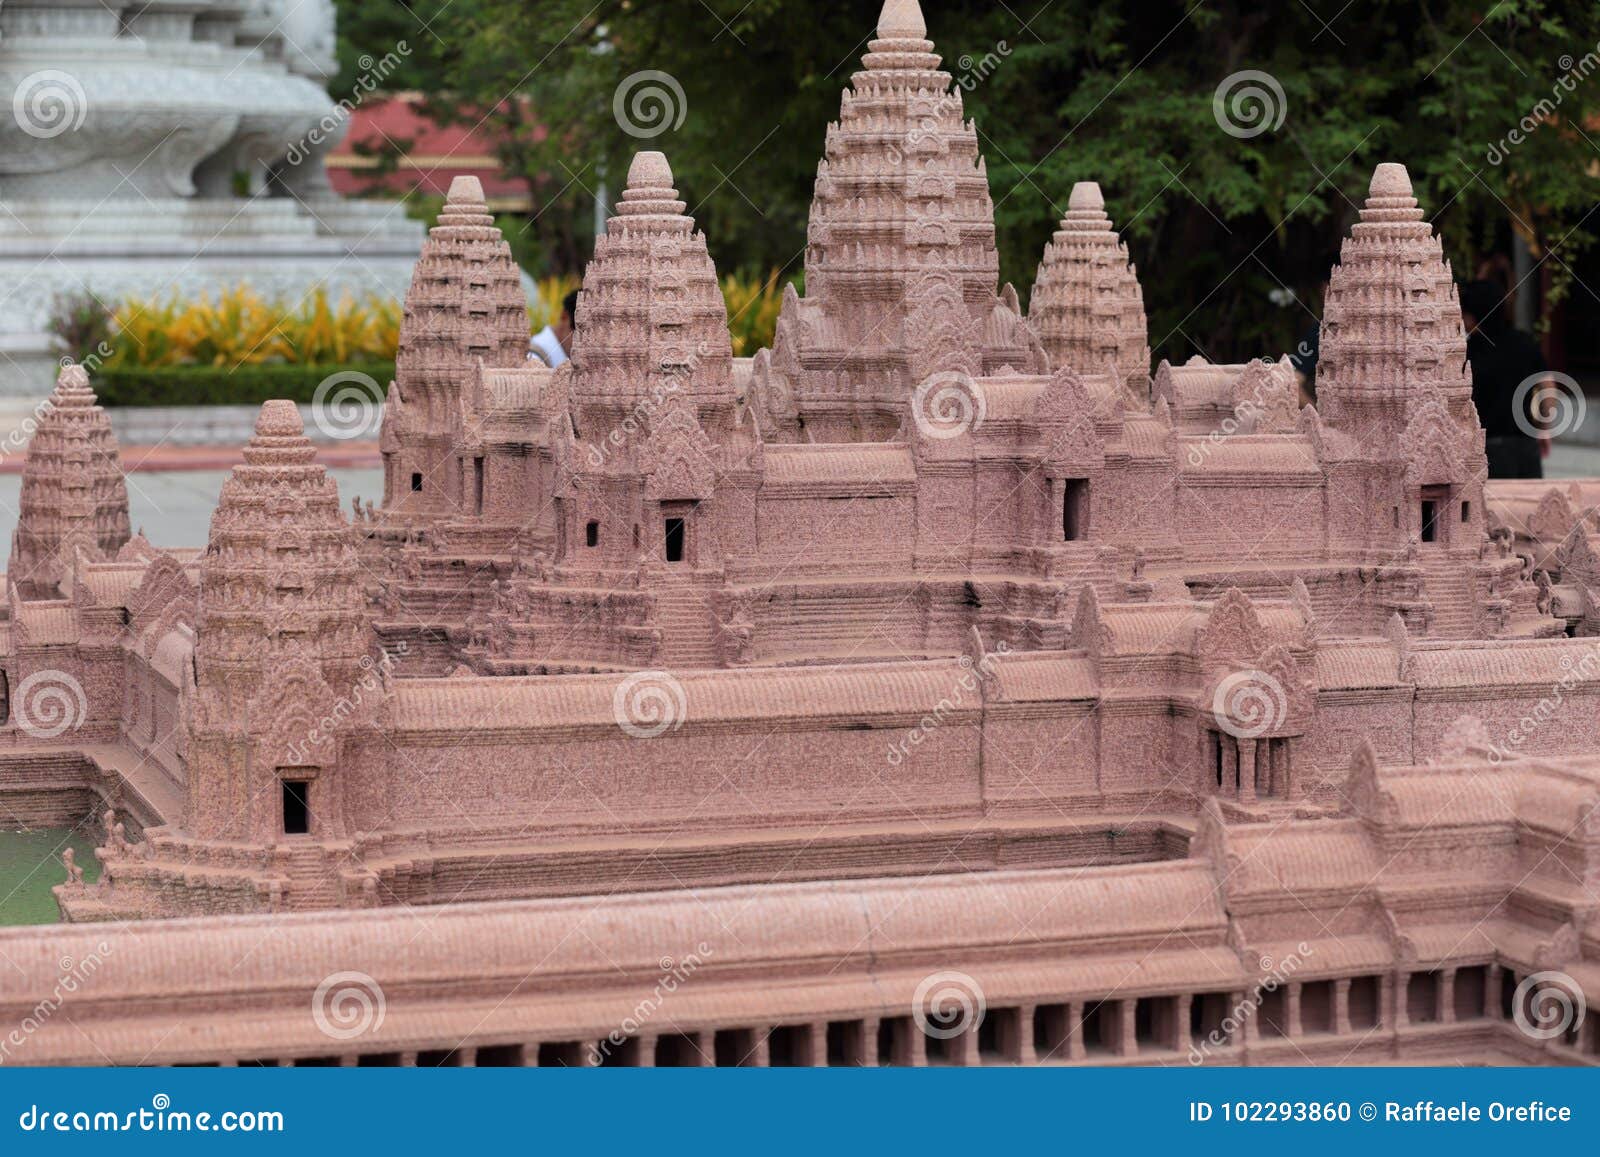 angkor wat diorama in royal palace of phnom penh